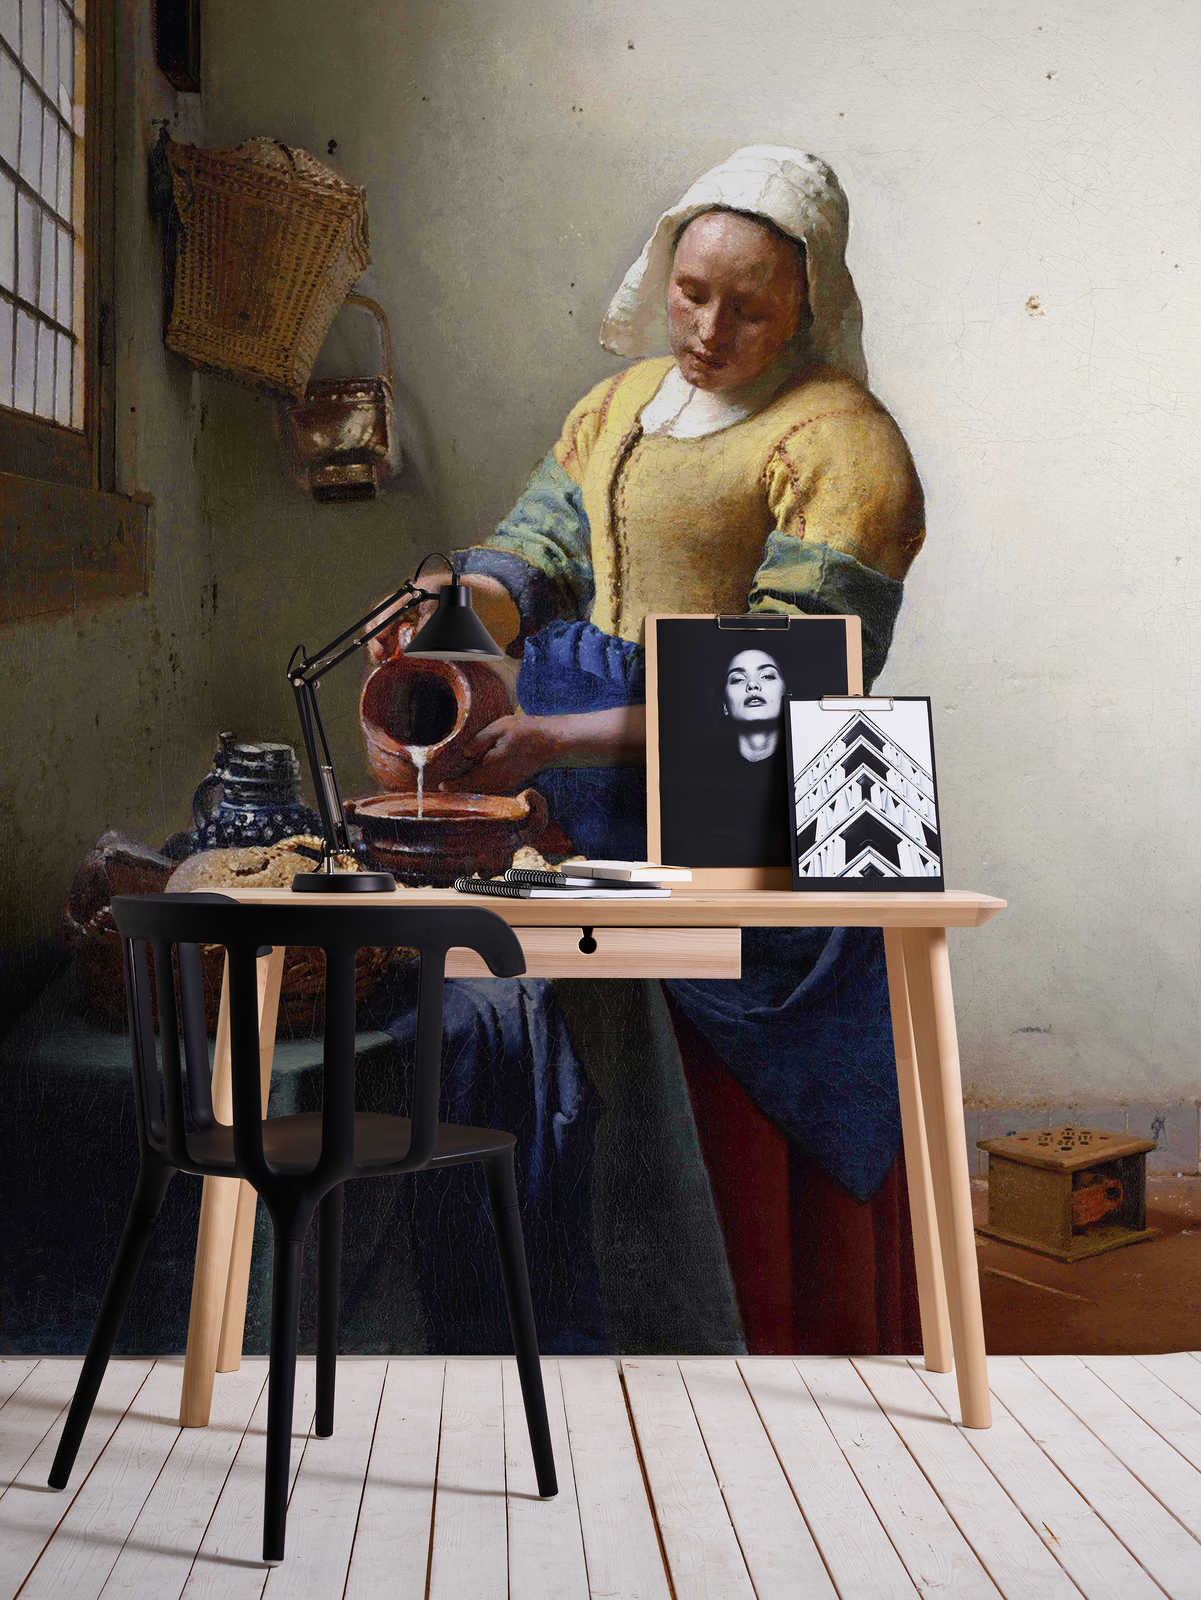             Dienstmeid met melkkan" muurschildering van Jan Vermeer
        